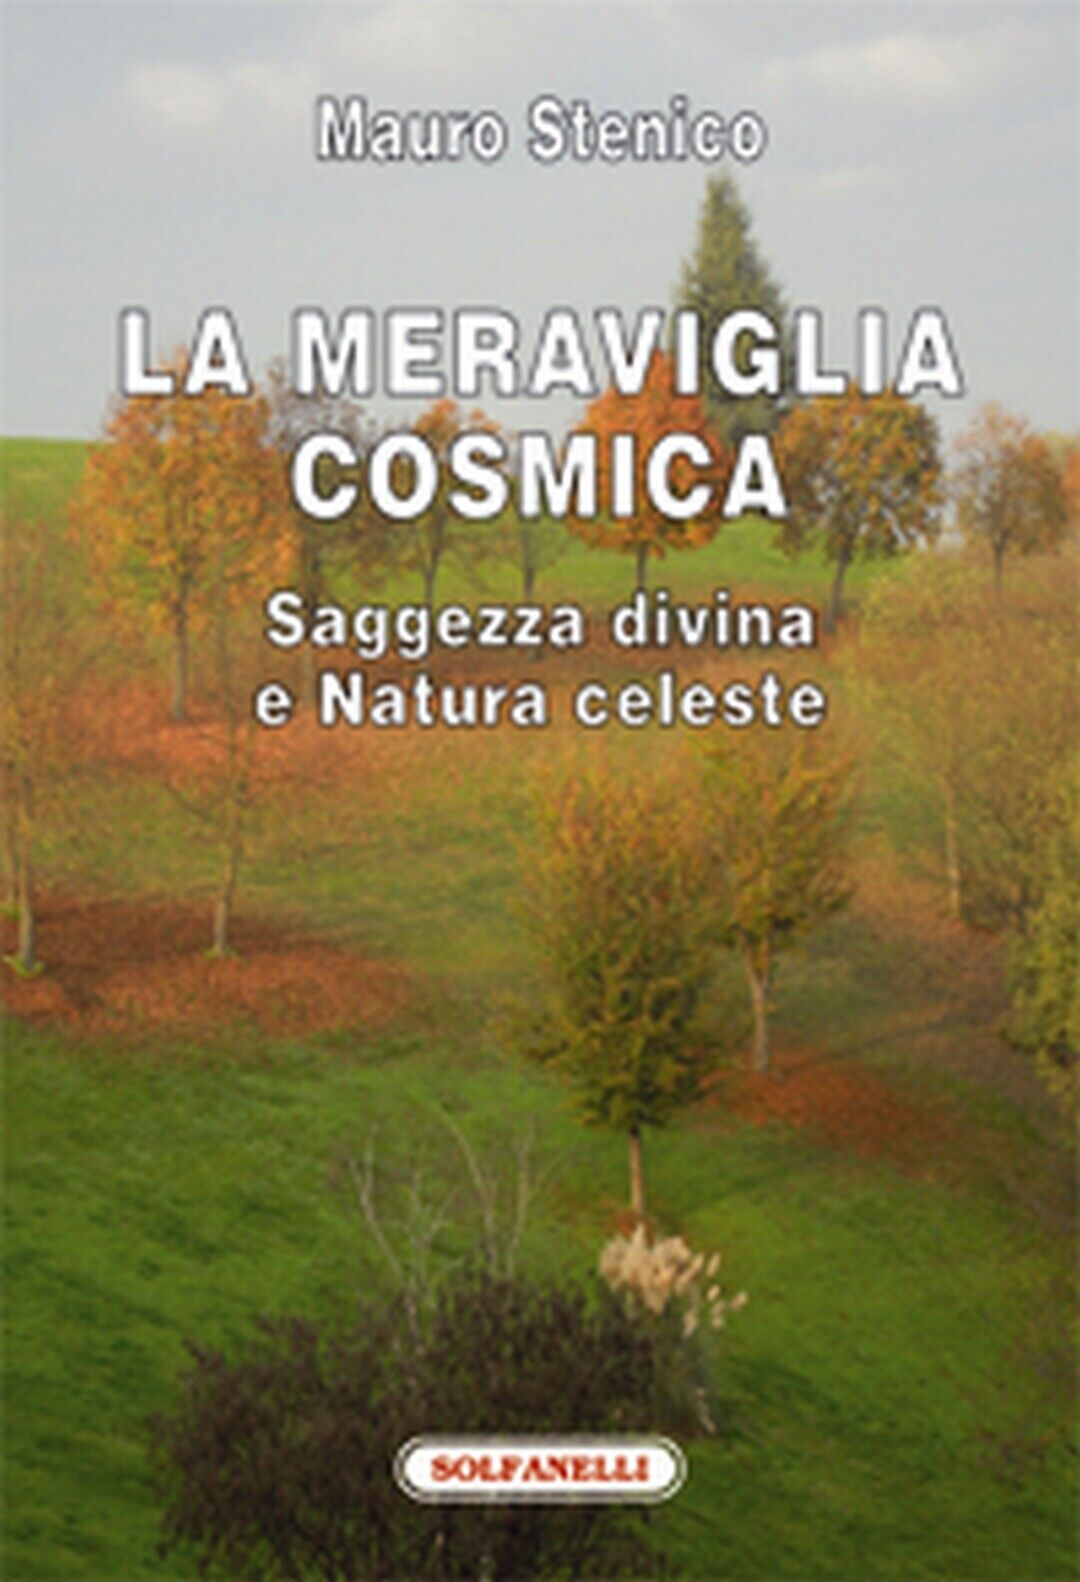 LA MERAVIGLIA COSMICA Saggezza divina e Natura celeste  di Mauro Stenico,  Solfa libro usato